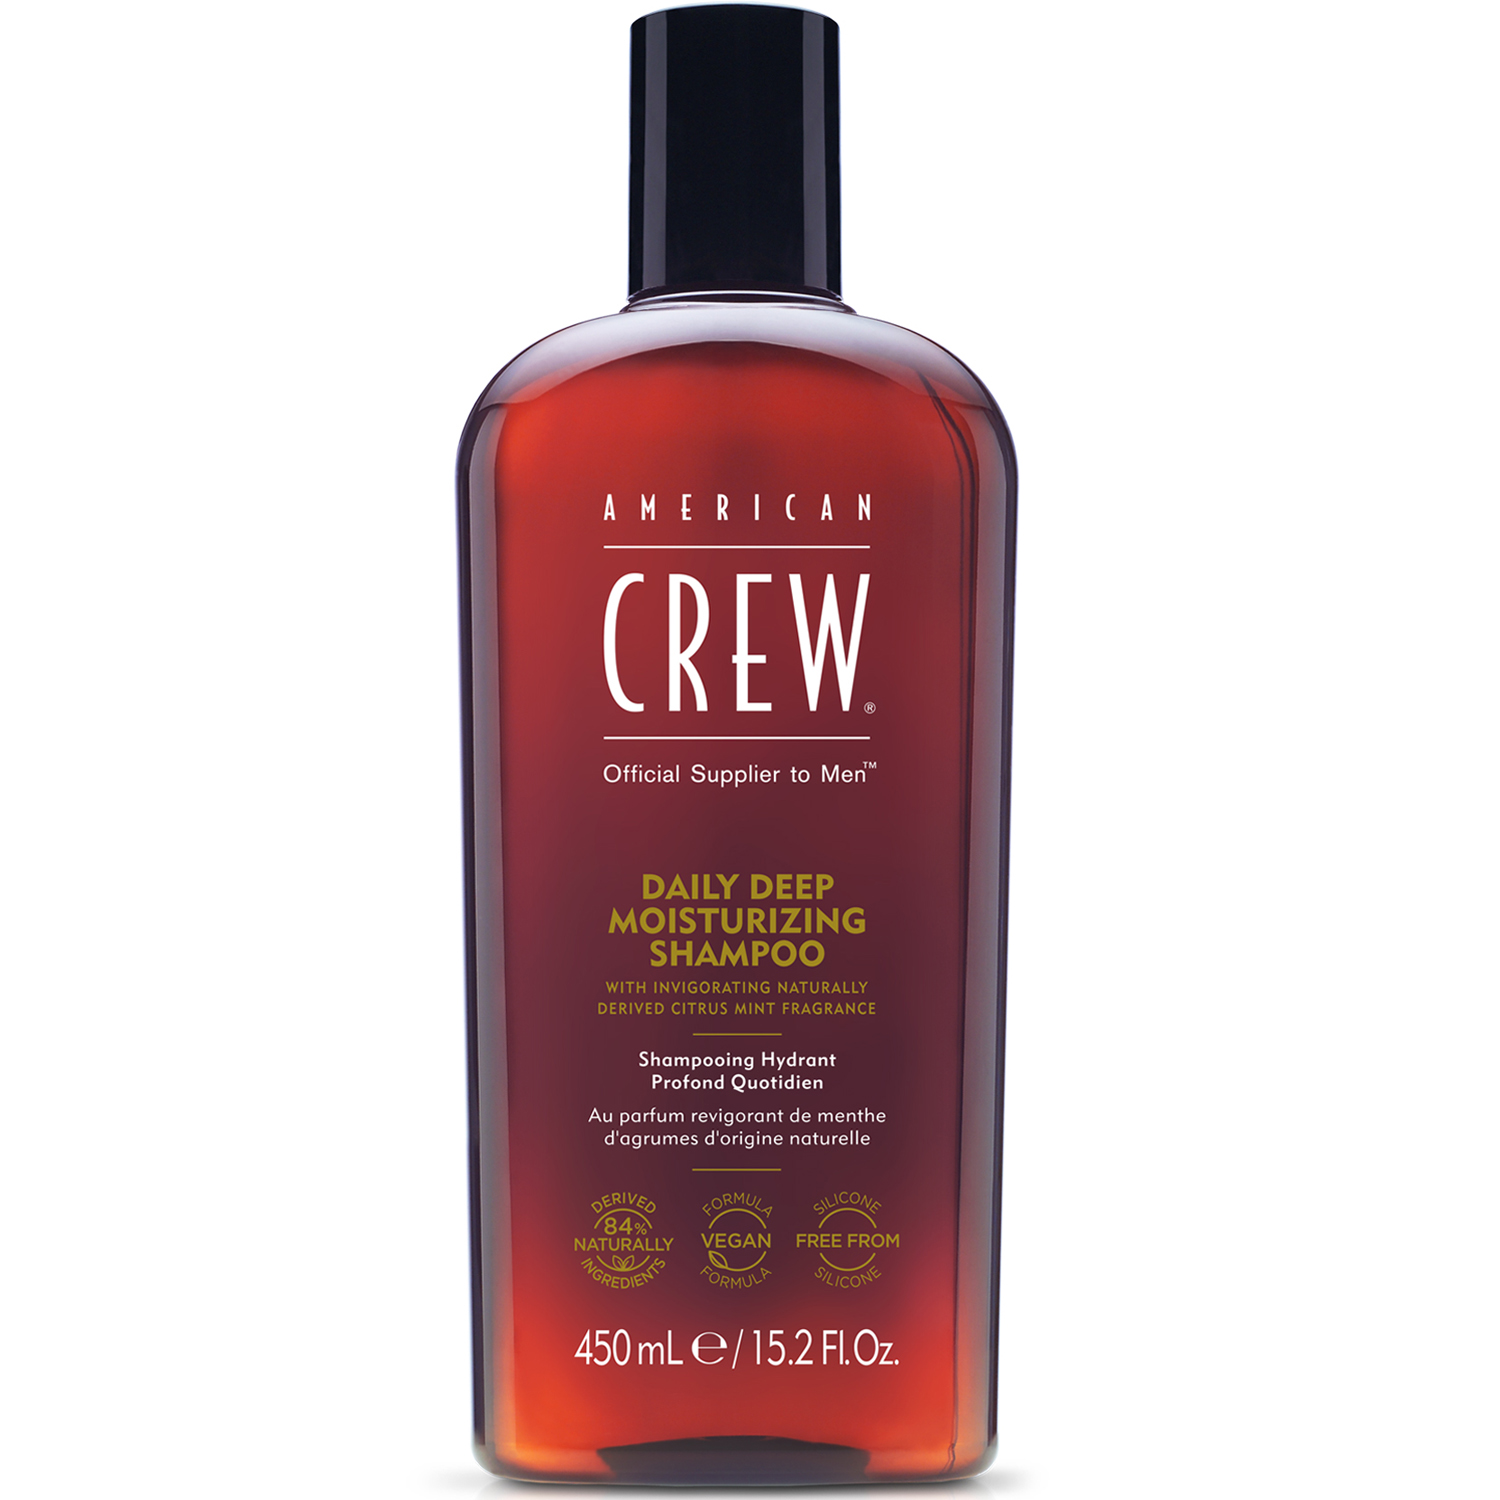 American Crew Ежедневный увлажняющий шампунь Daily Deep Moisturizing, 450 мл (American Crew, Hair&Body) american crew daily deep moisturizing shampoo ежедневный увлажняющий шампунь 450 мл